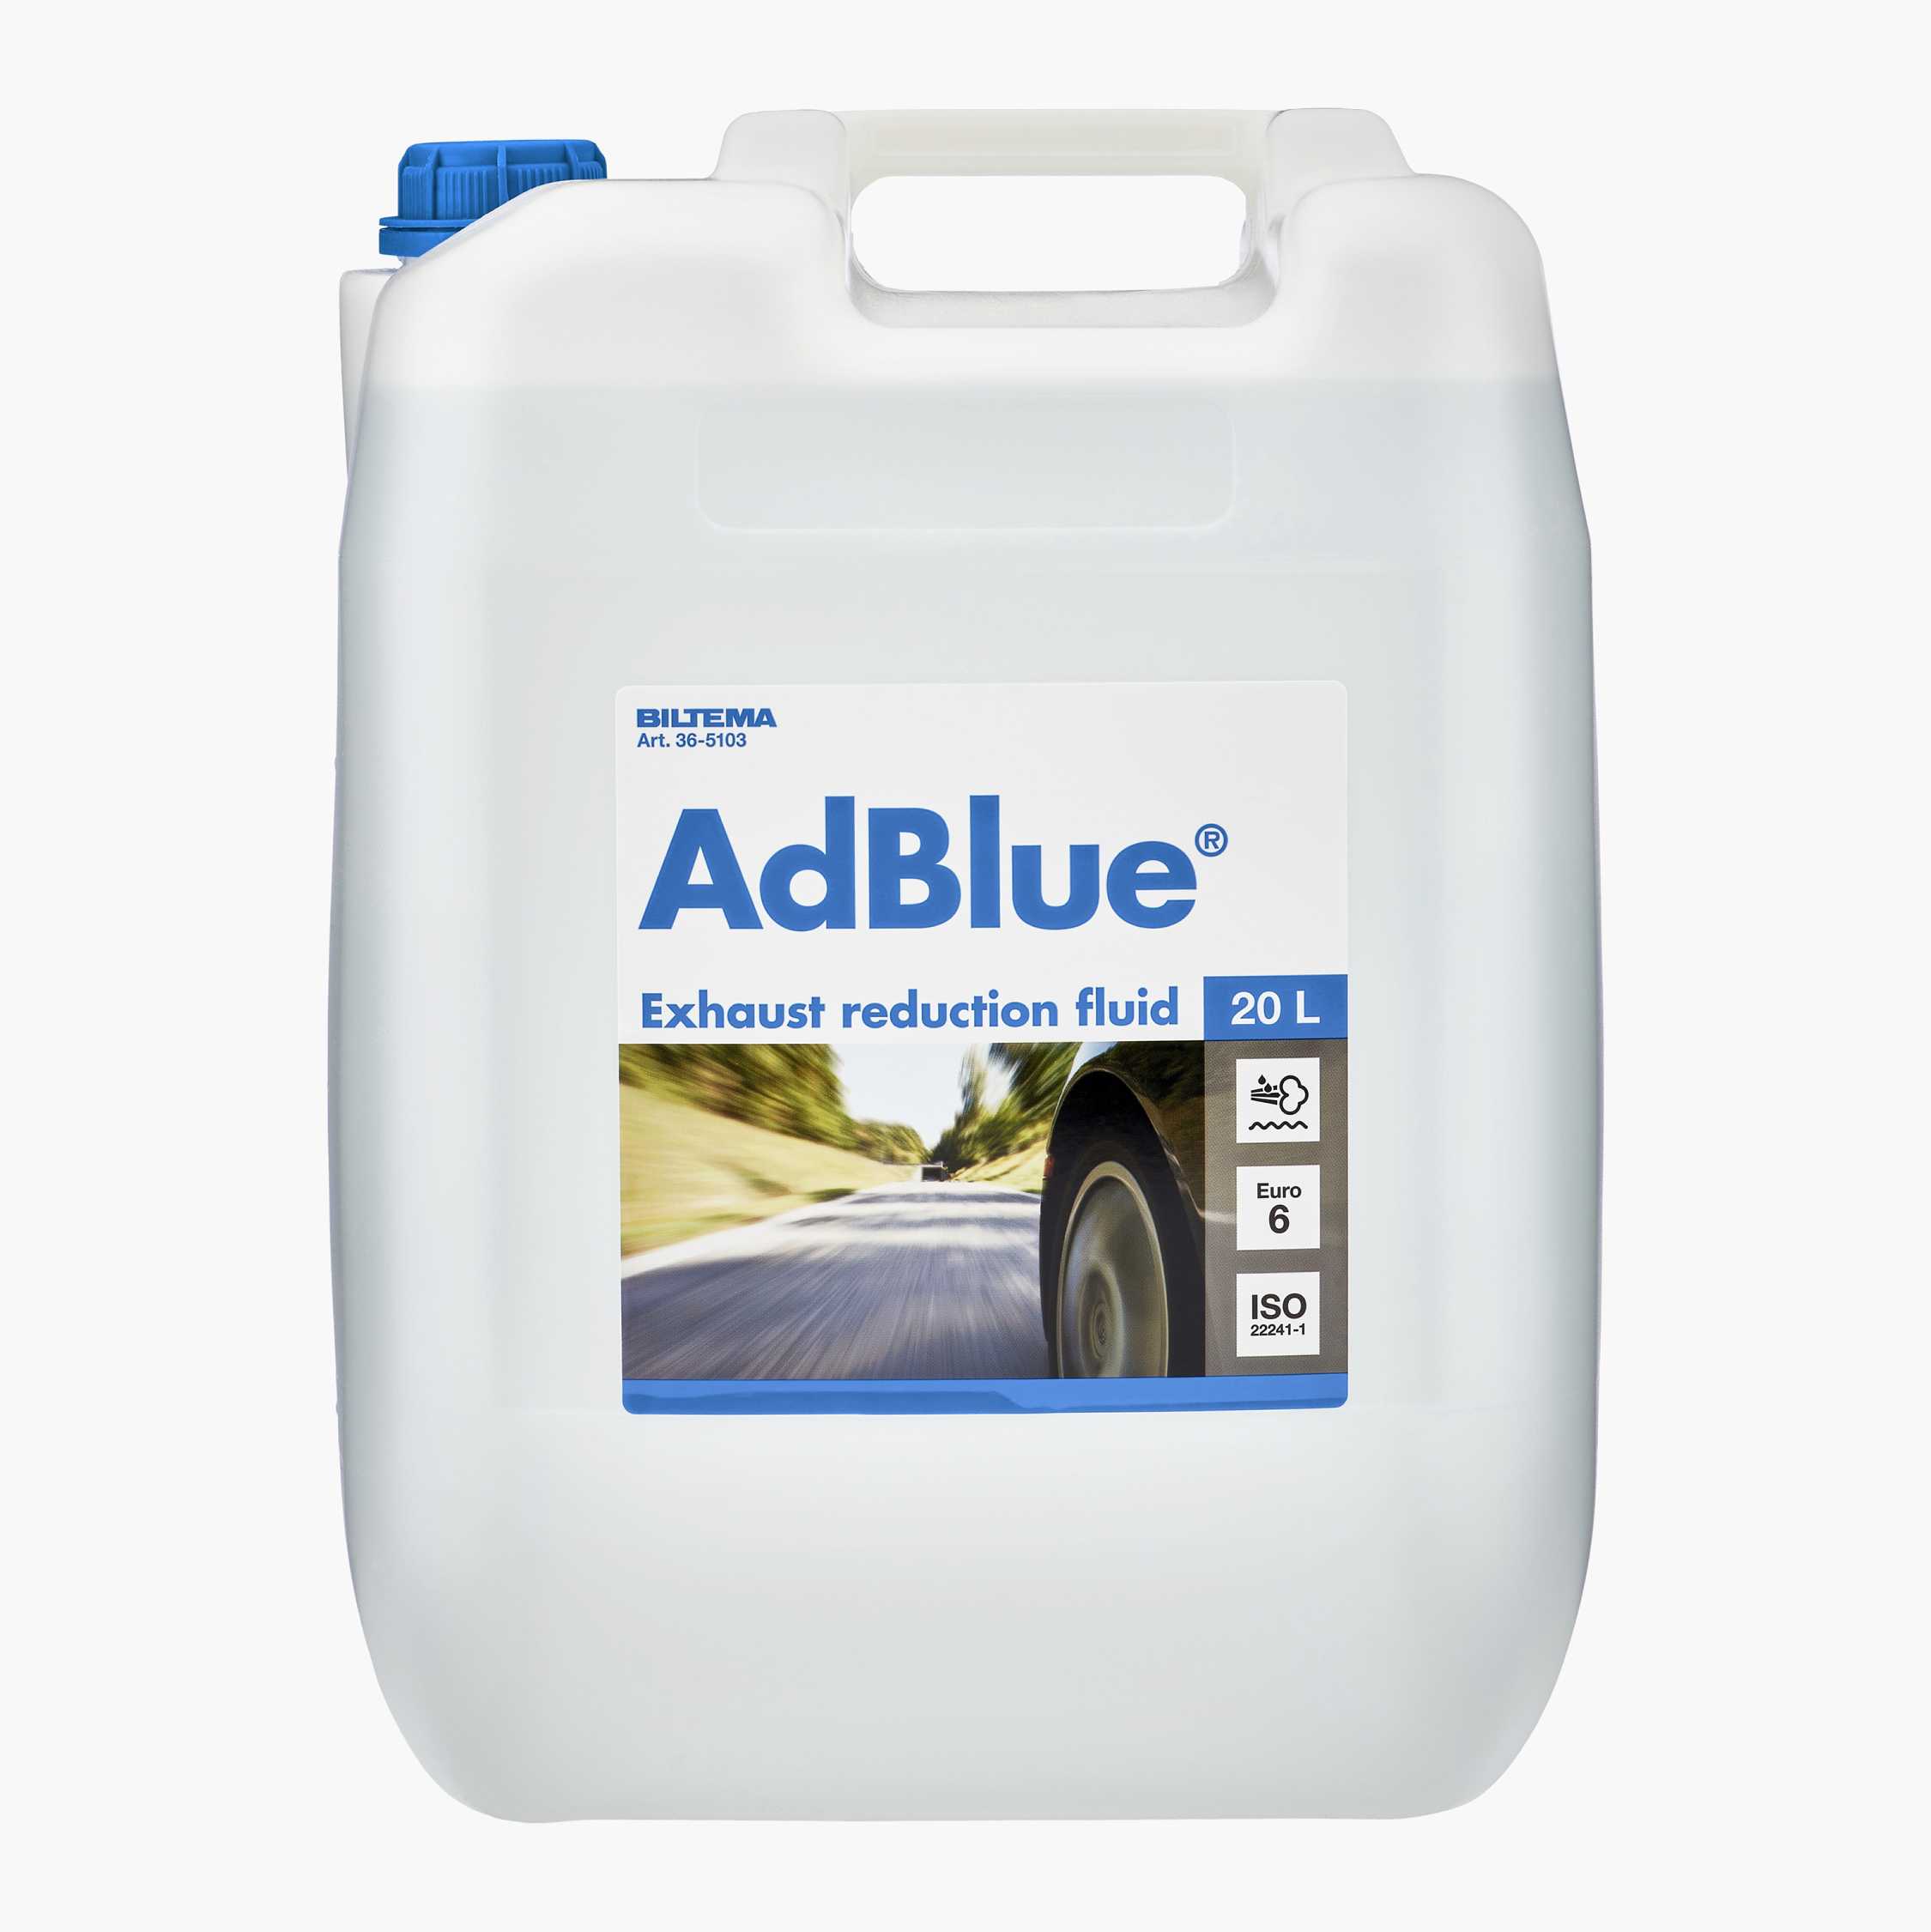 AdBlue 10L/20L, Ad Blue, Ad Blue Online